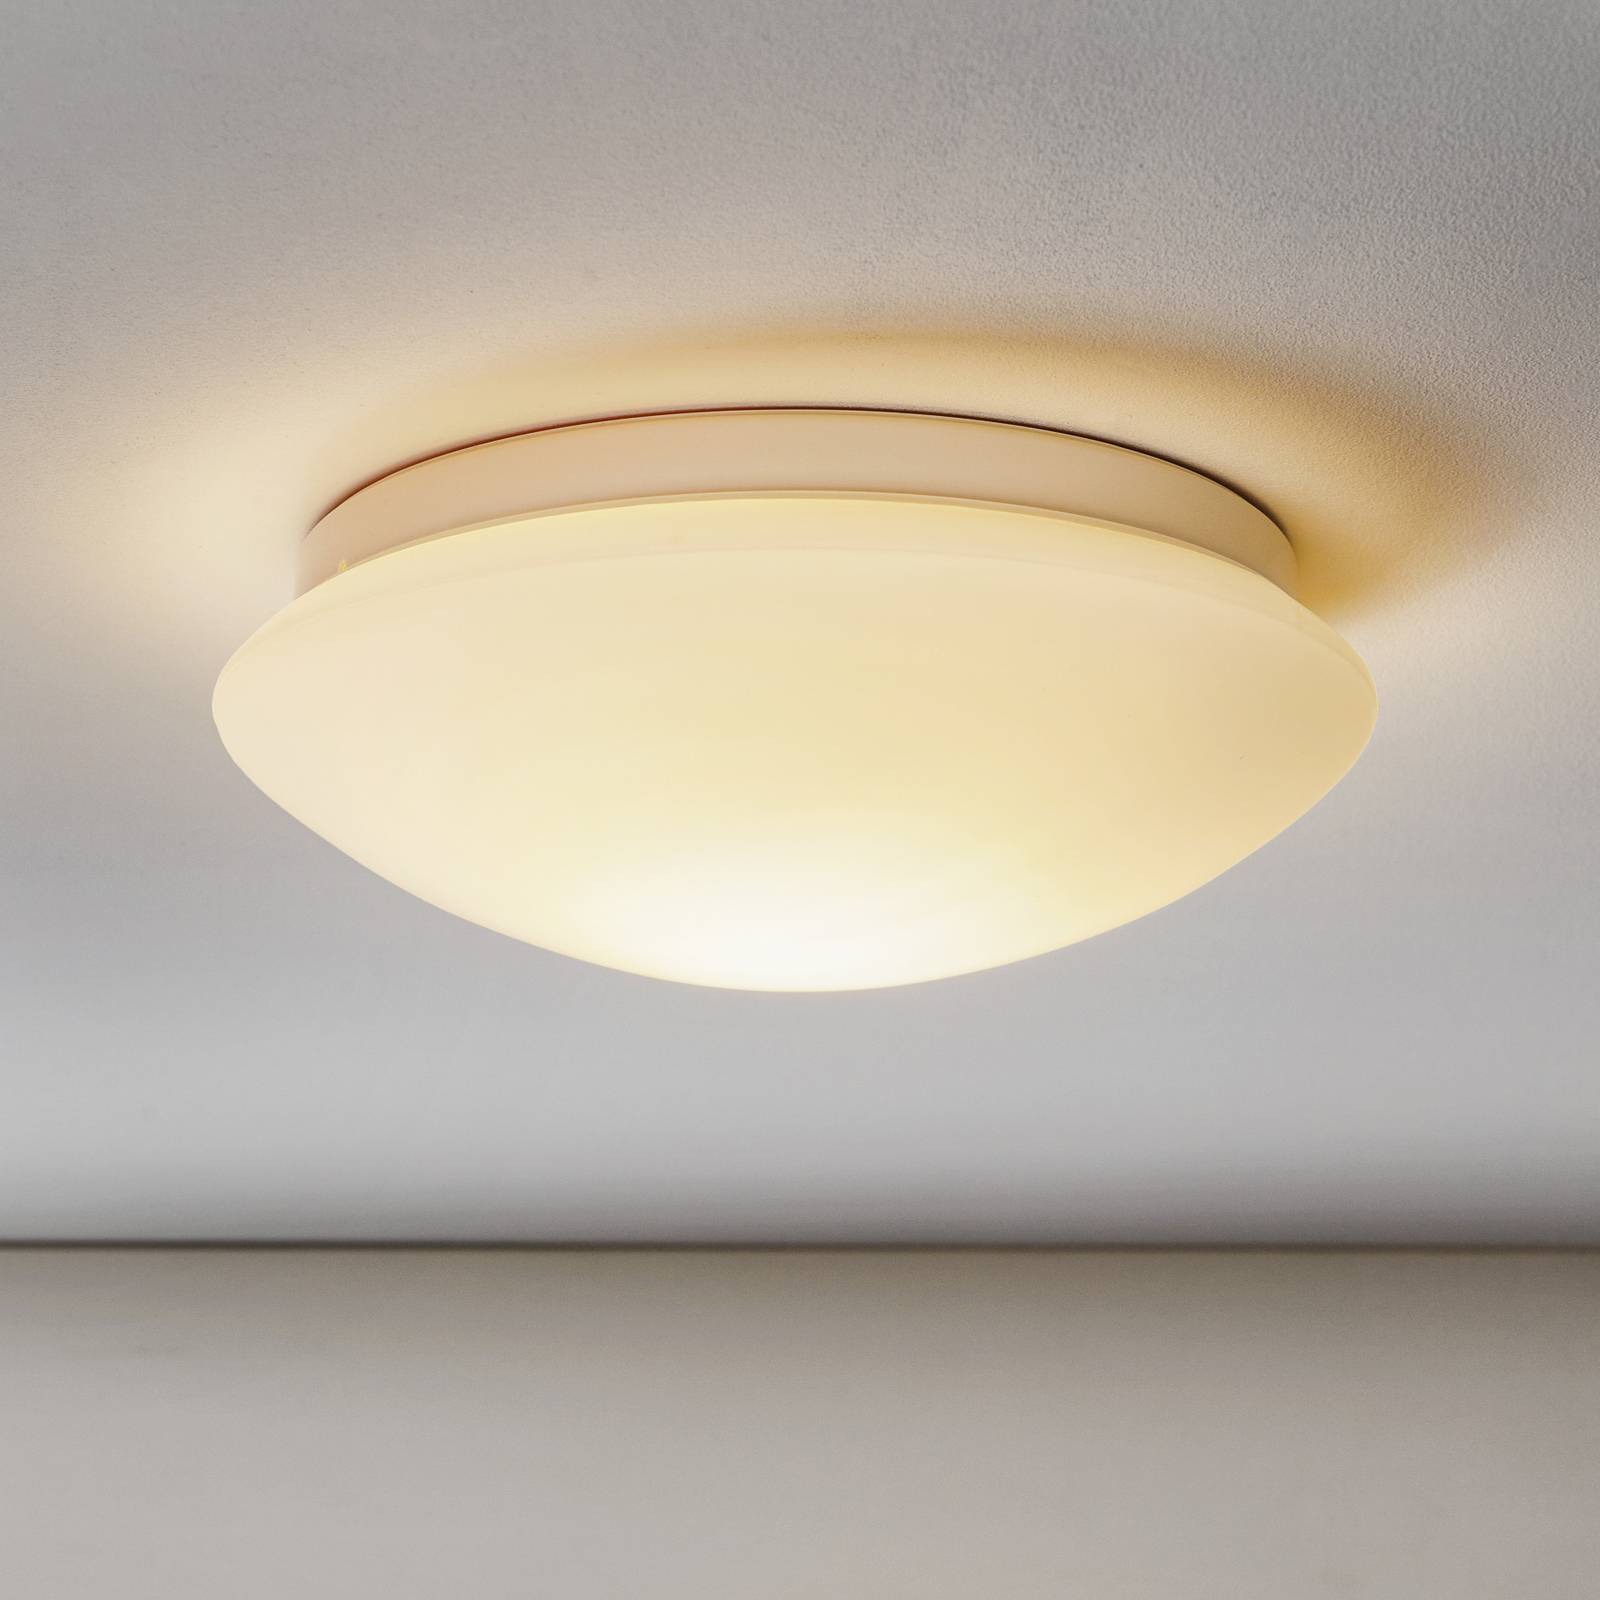 STEINEL RS 16 L indoor sensor lamp